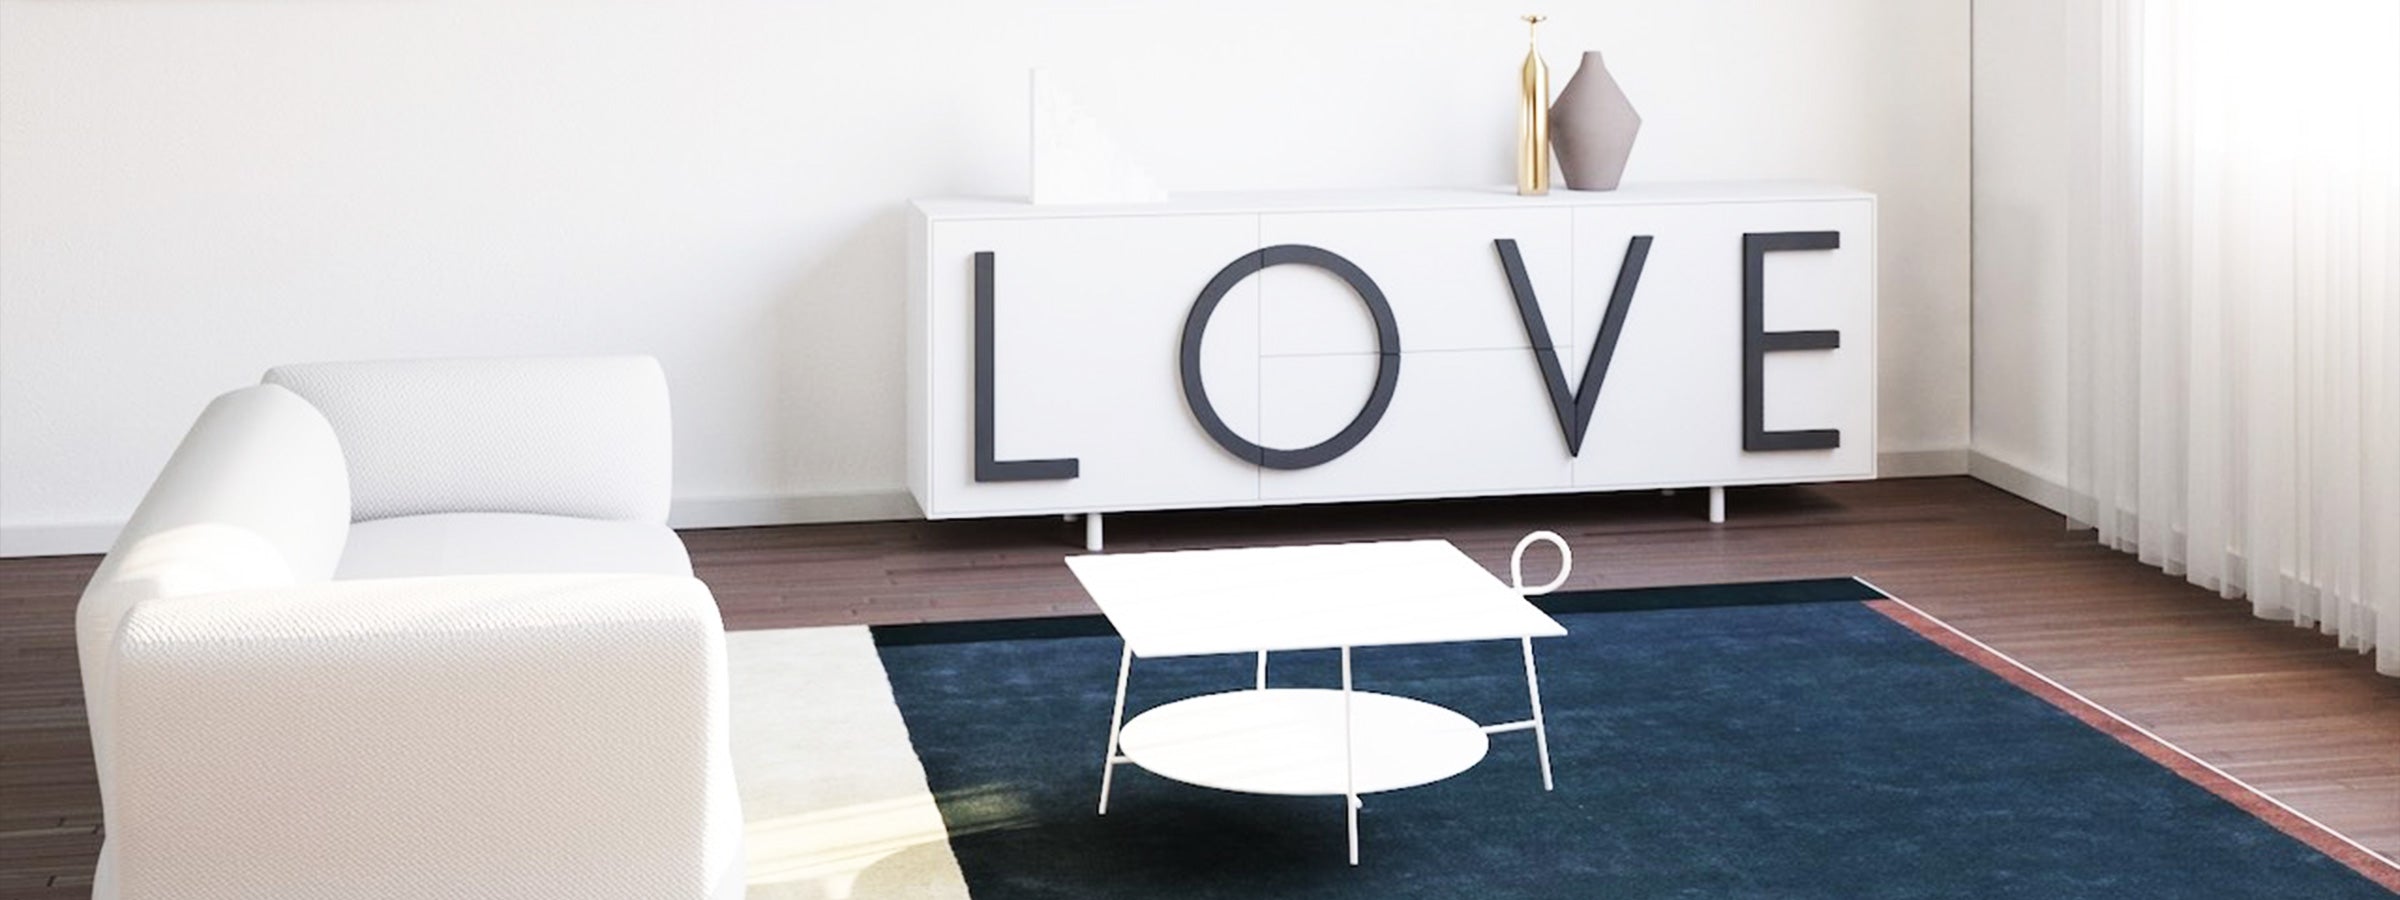 LOVE by Fabio Novembre for Driade - Design Italy